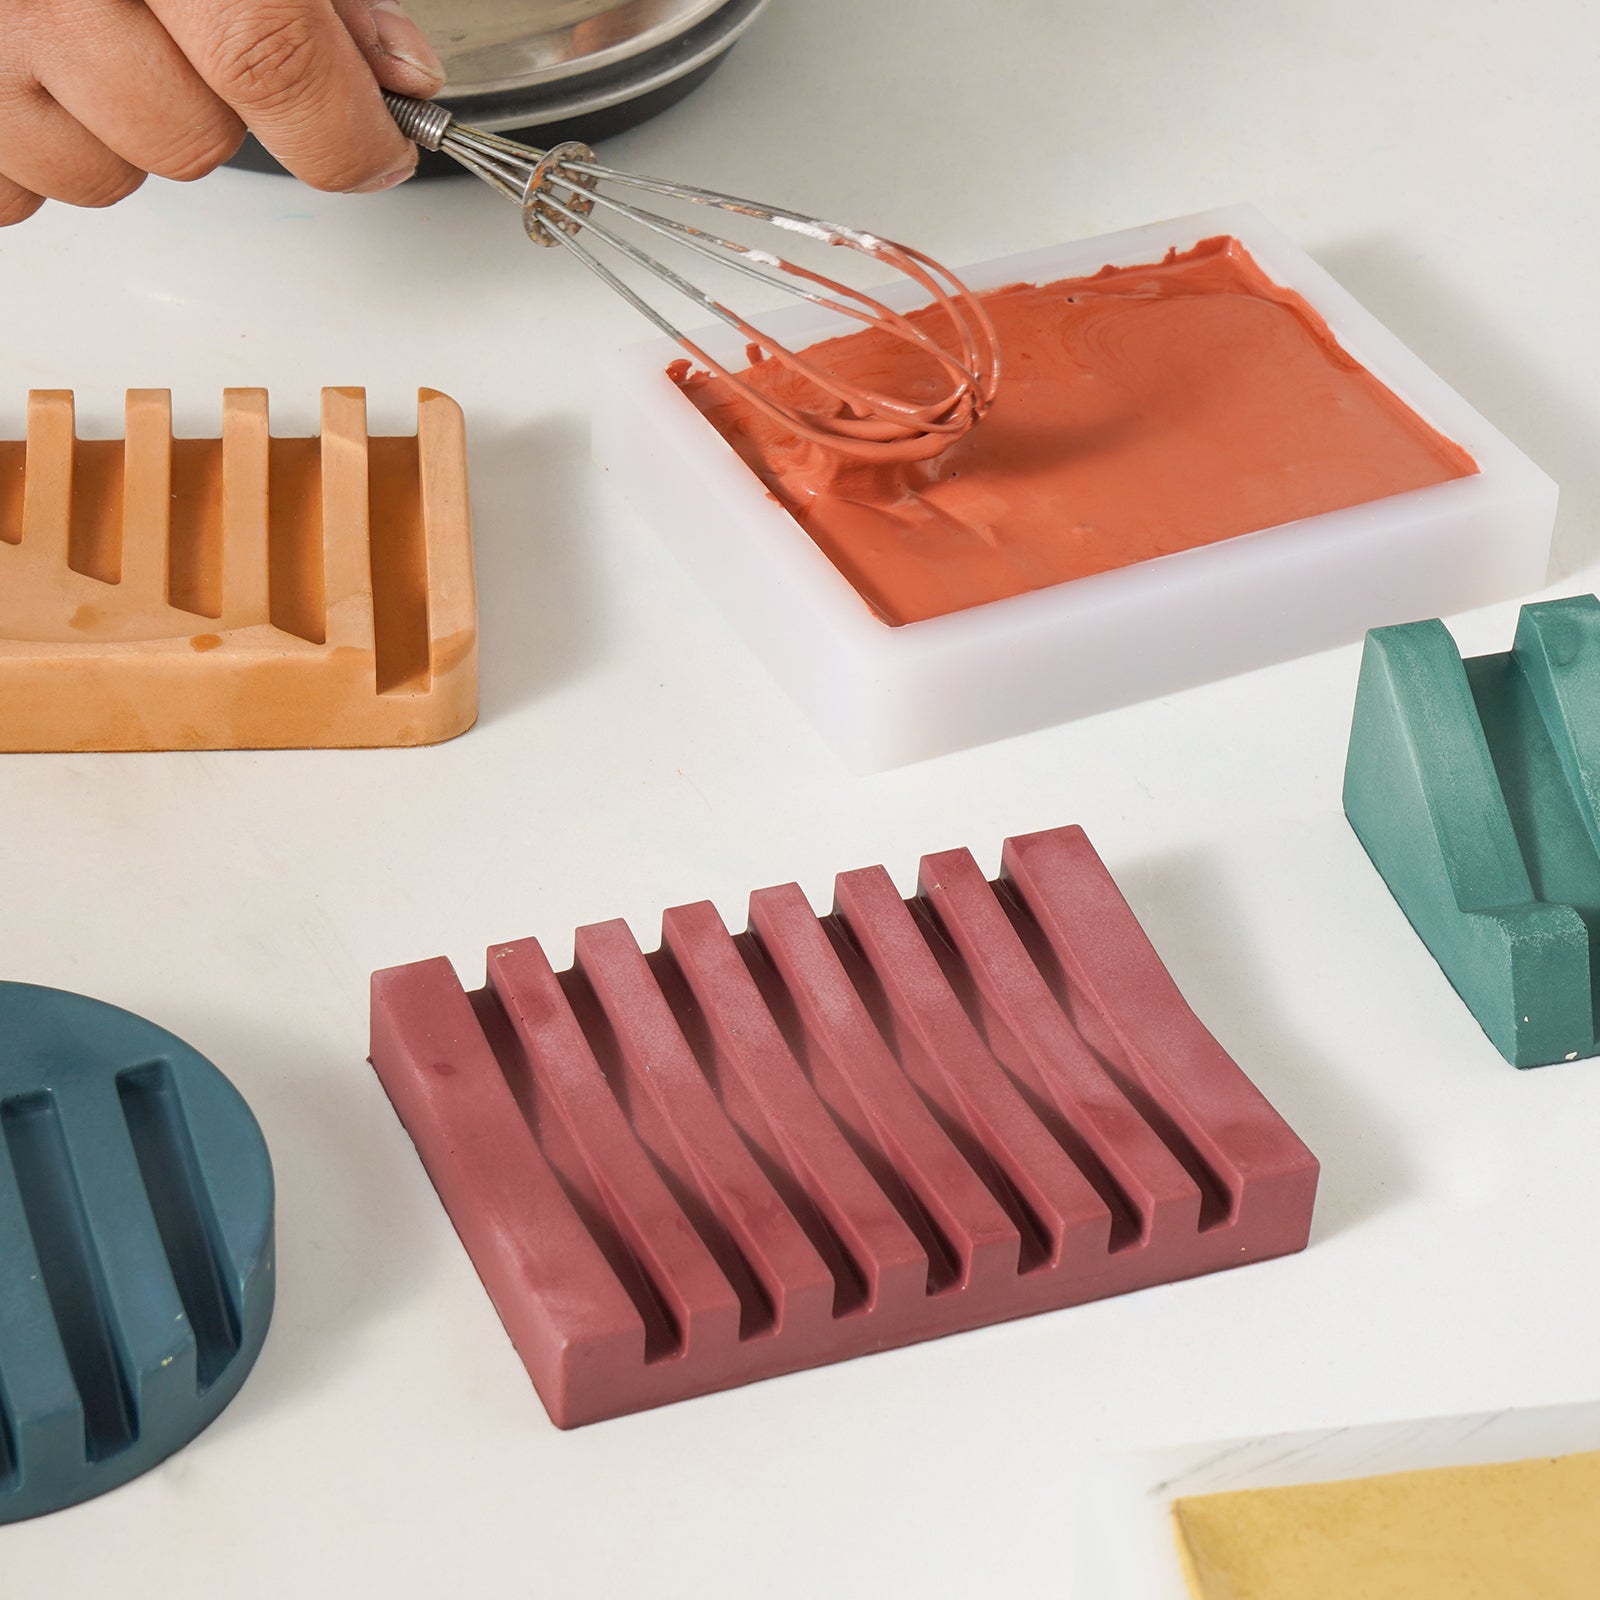 Concrete Self-Draining Soap Dish Silicone Mold – Boowan Nicole